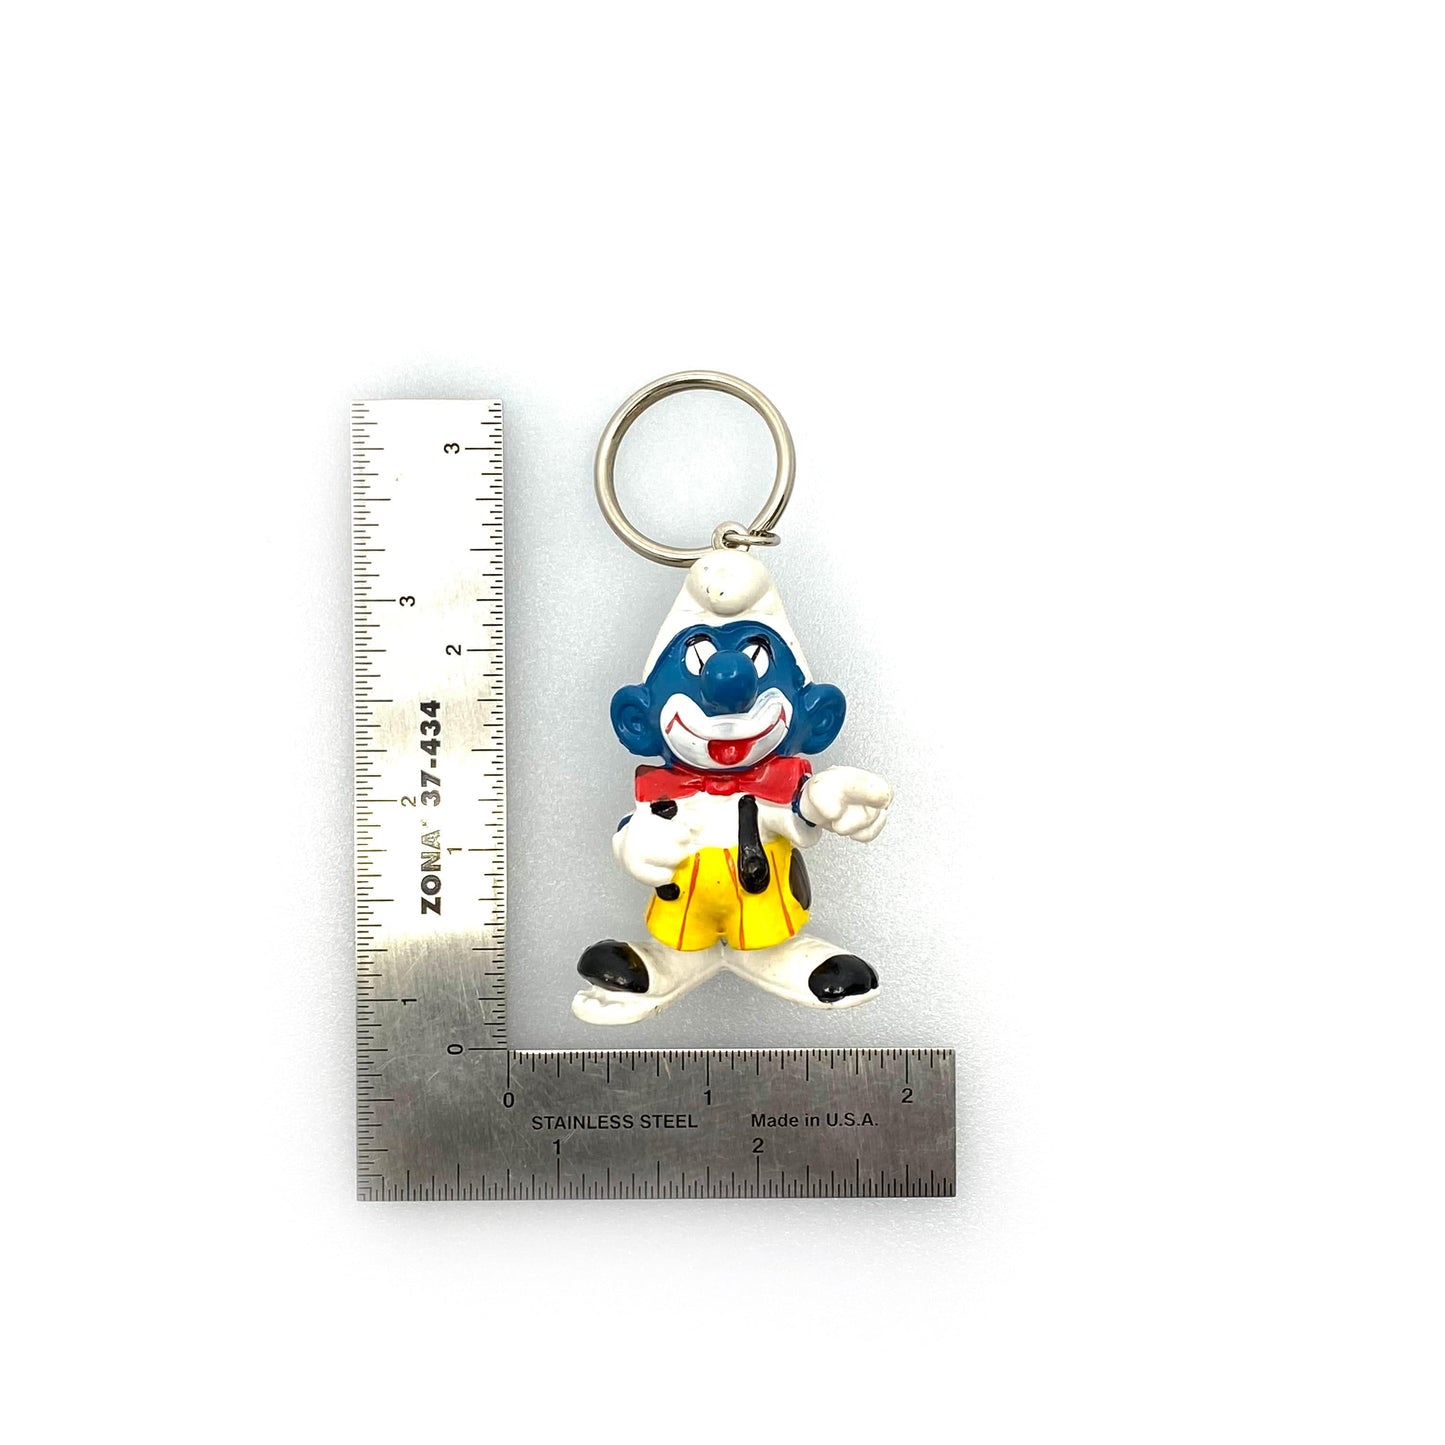 Vintage 1978 Schleich Toys Clown Smurf Figurine Keychain Key Ring EUC